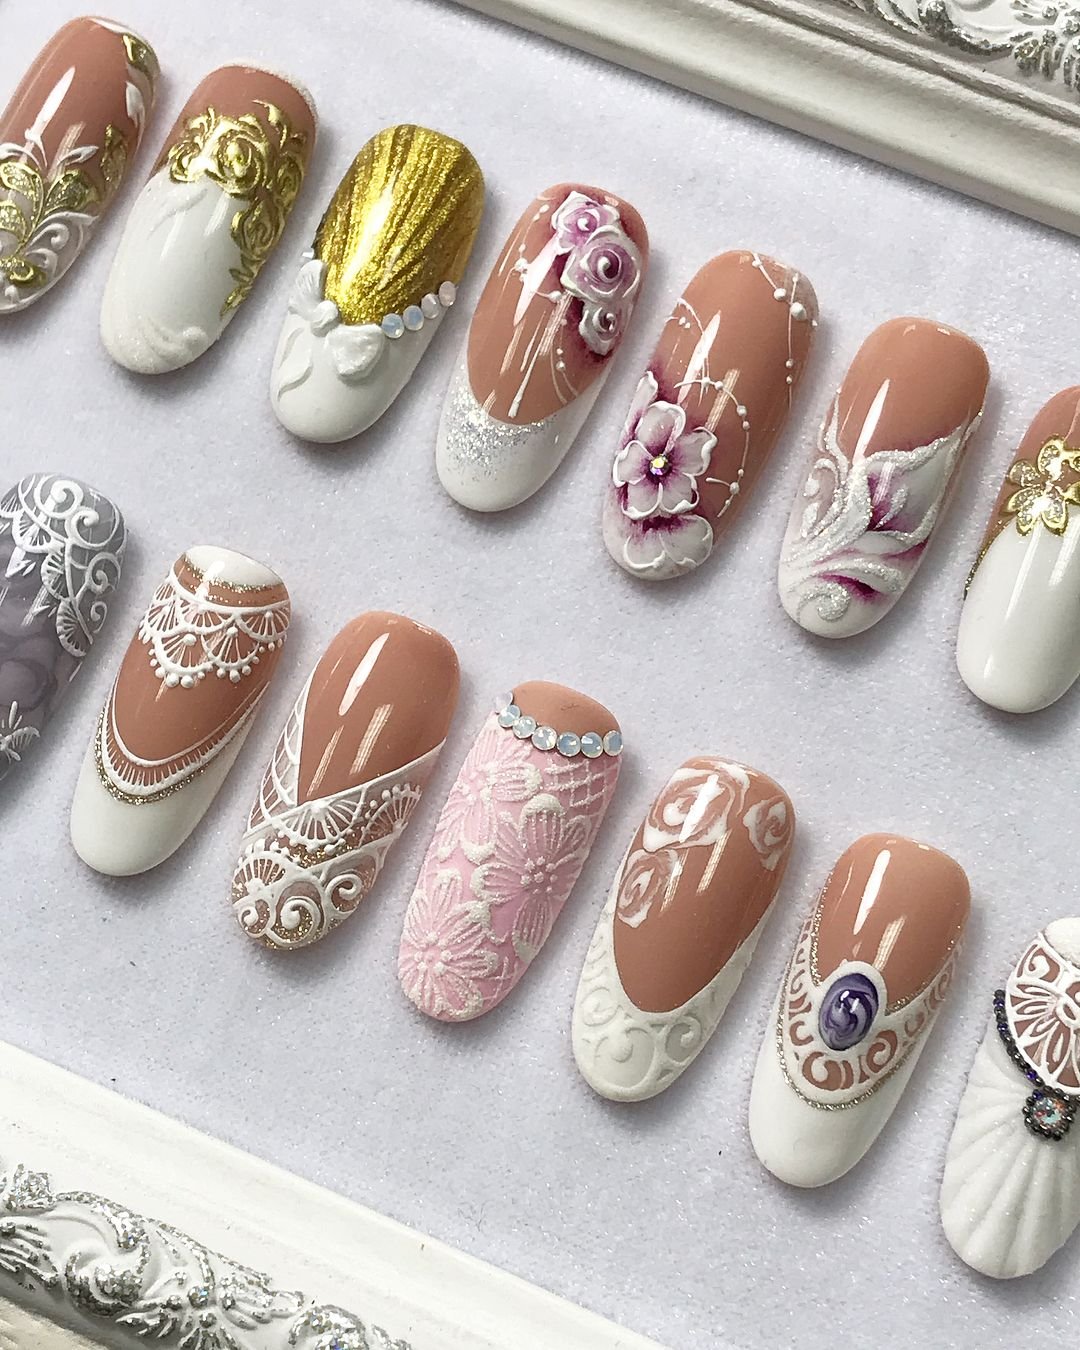 Свадебный маникюр: роскошные варианты дизайна ногтей на 2019 год, фото лучших идей